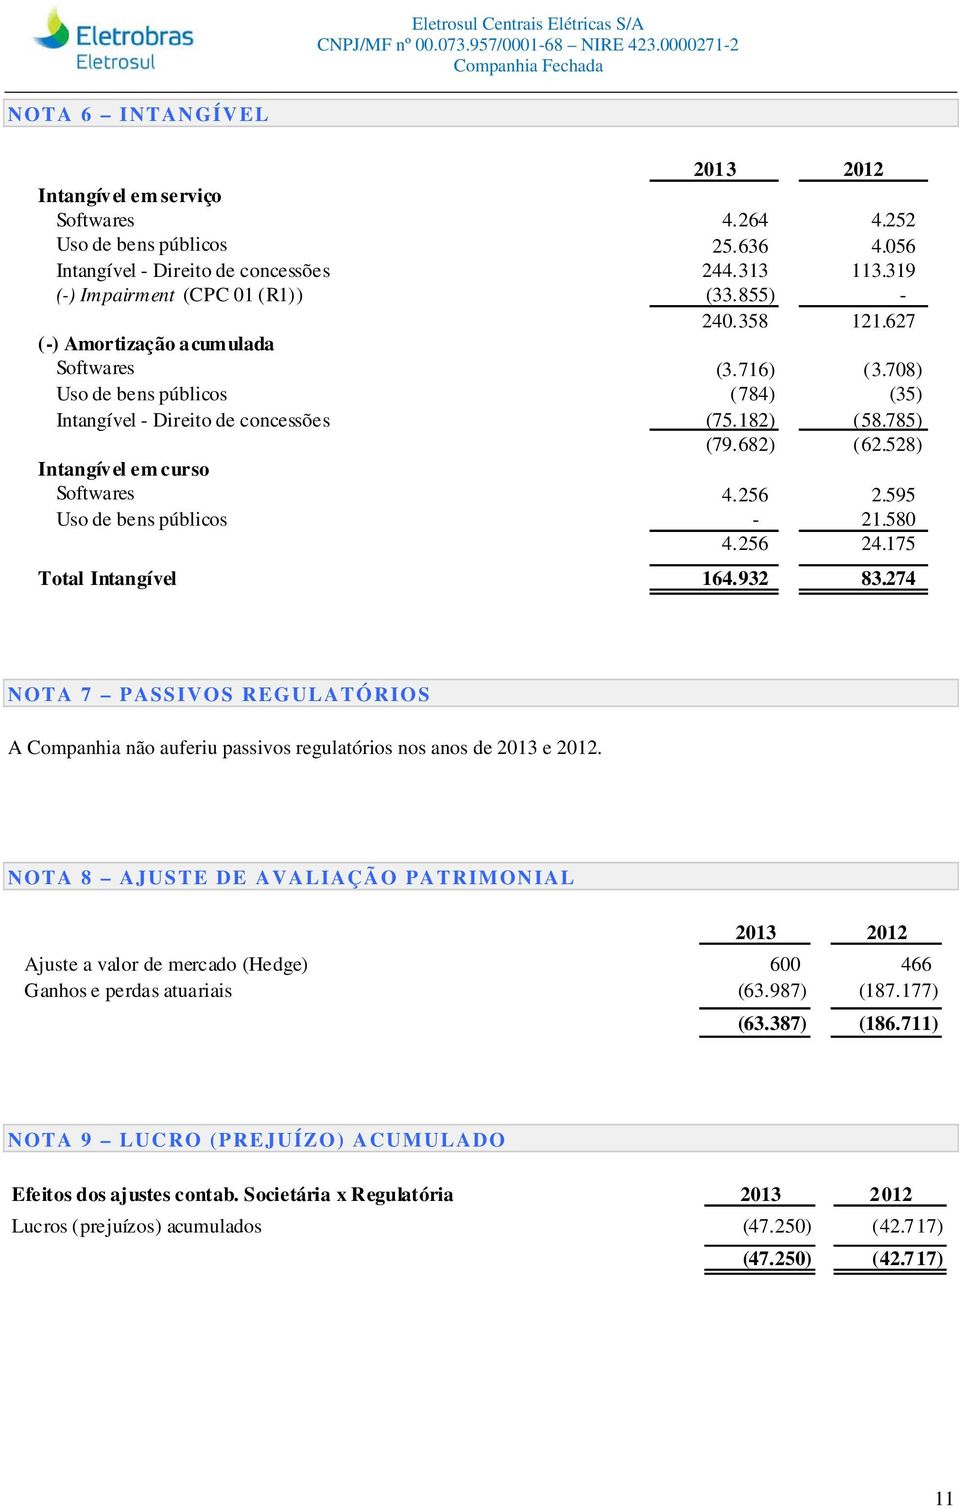 595 Uso de bens públicos - 21.580 4.256 24.175 Total Intangível 164.932 83.274 NOTA 7 PASSIVOS REGULATÓRIOS A Companhia não auferiu passivos regulatórios nos anos de 2013 e 2012.